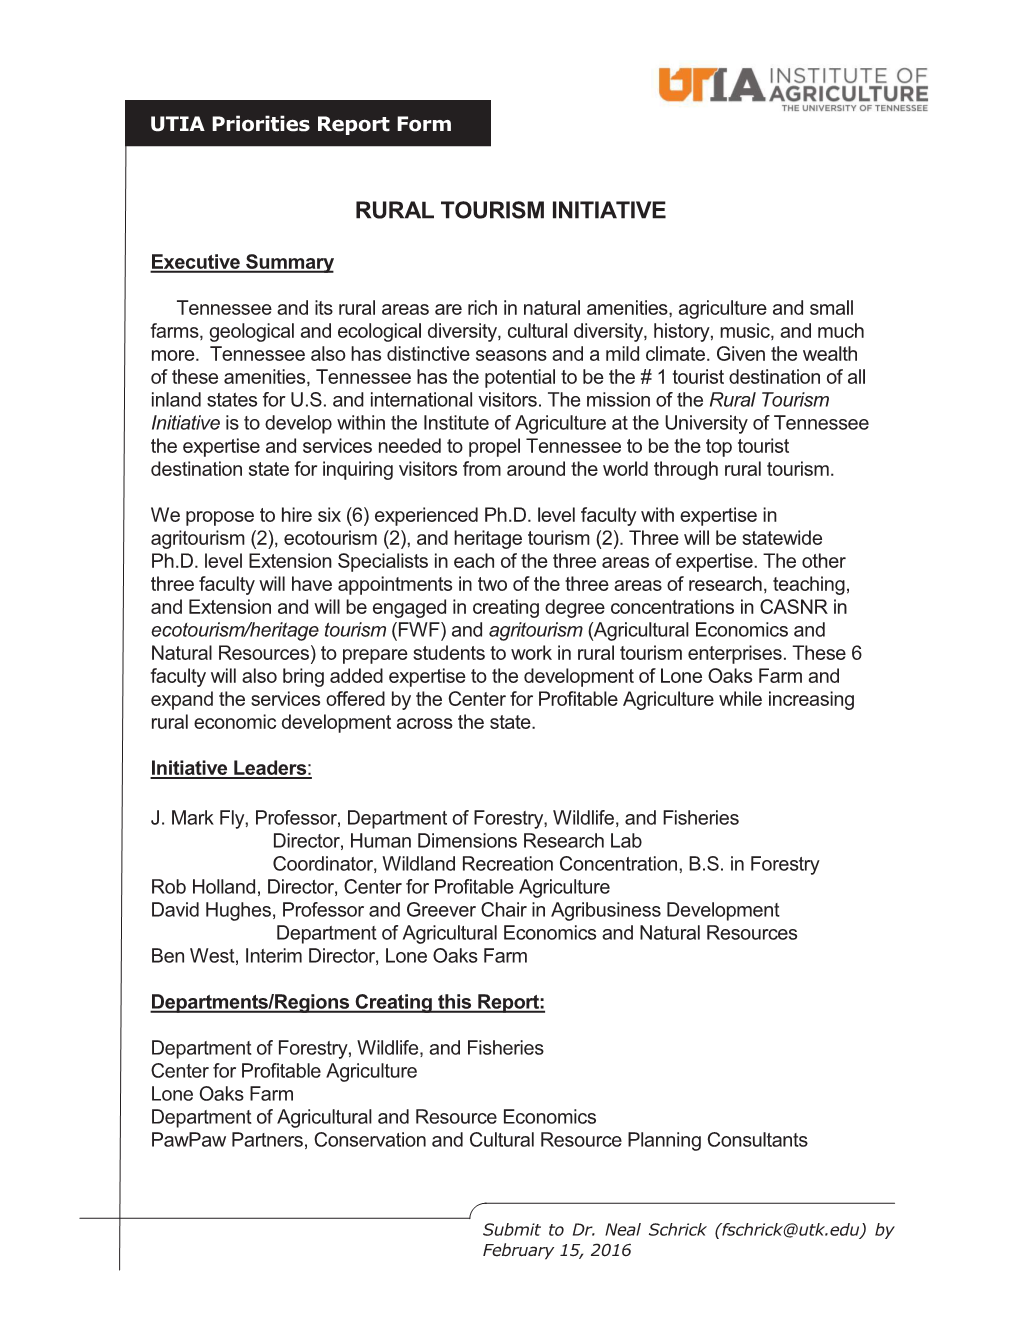 Rural Tourism Initiative